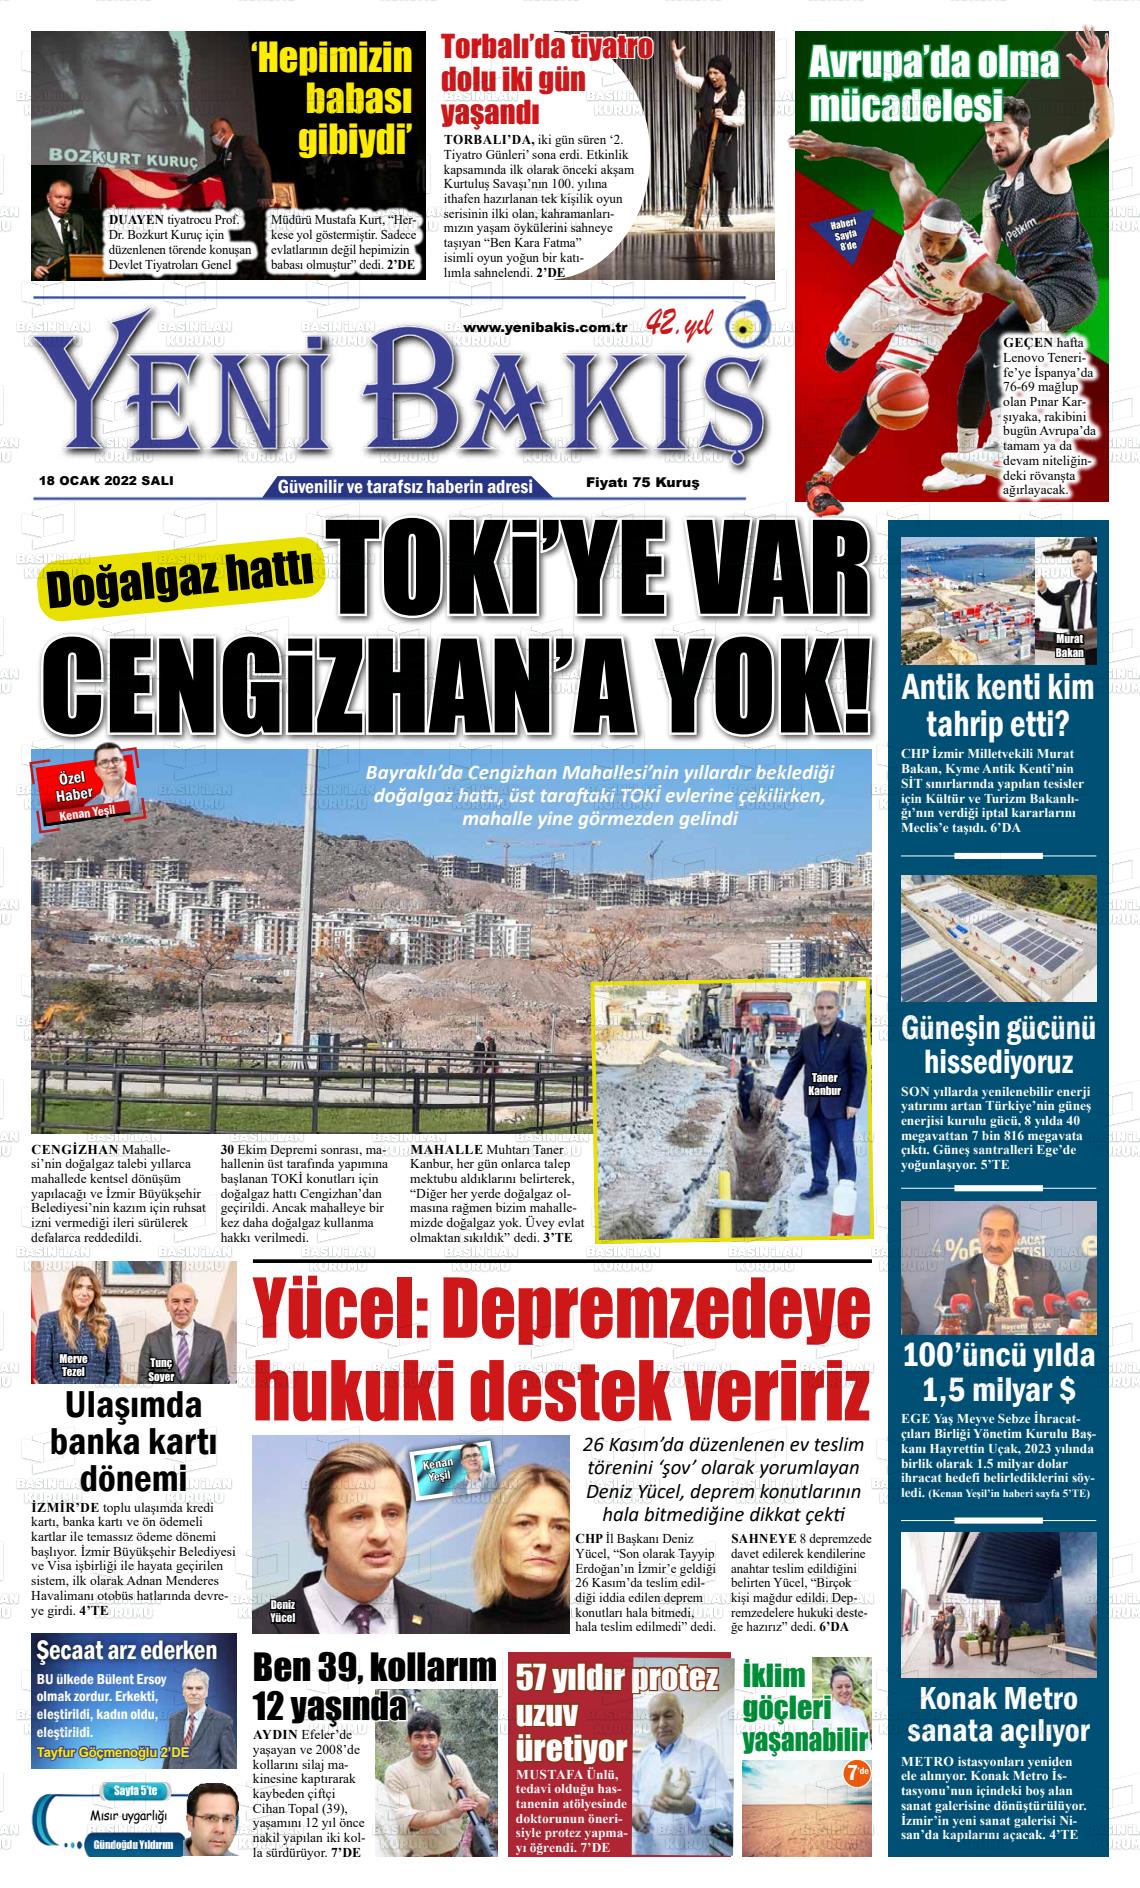 18 Ocak 2022 Yeni Bakış Gazete Manşeti